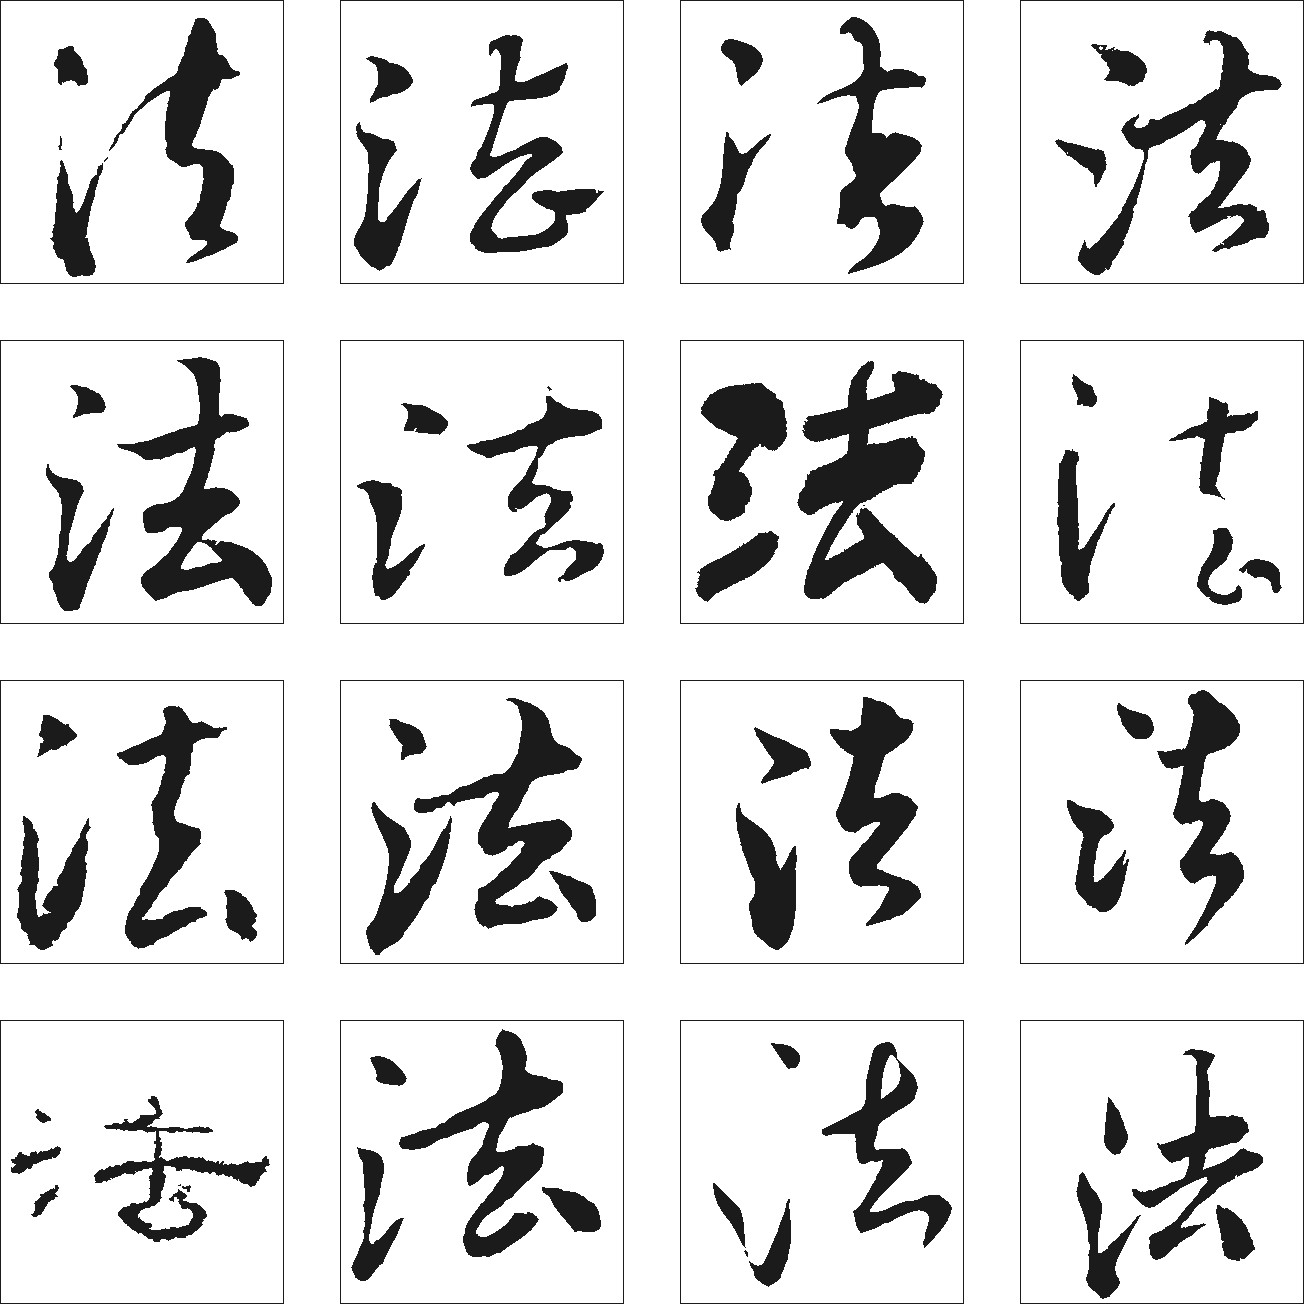 法_书法字体_字体设计作品-中国字体设计网_ziti.